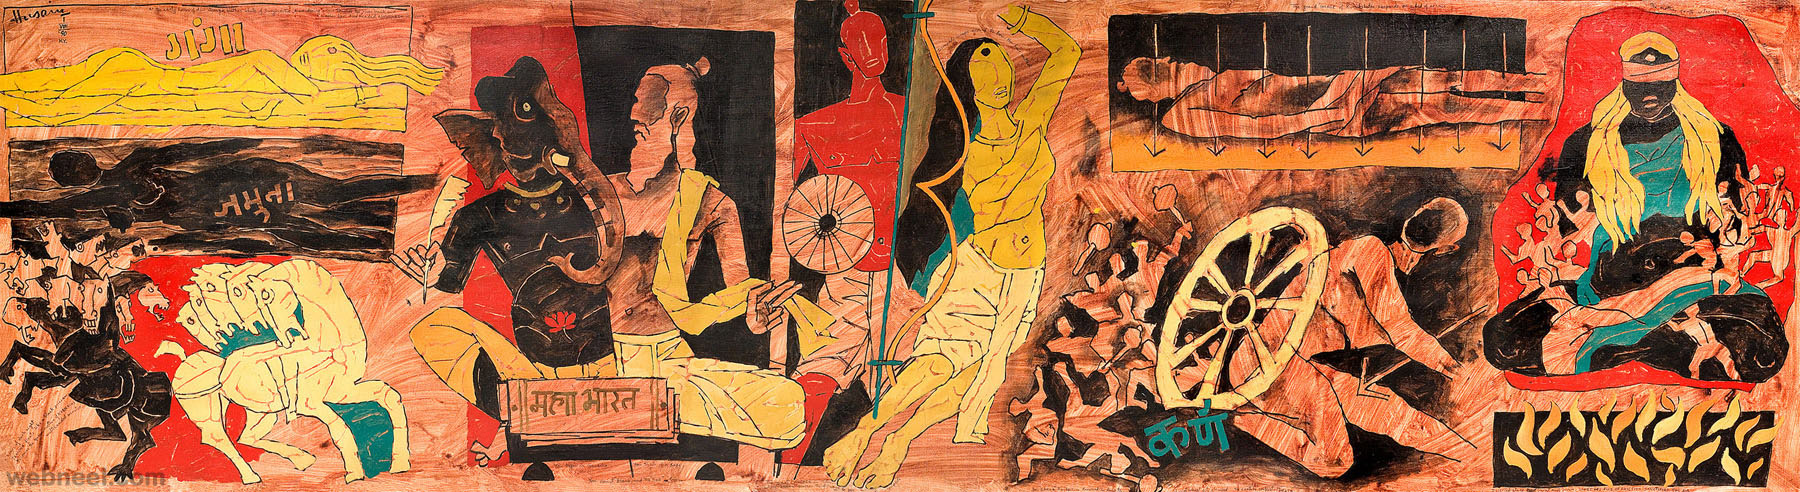 mahabharata mf hussain painting